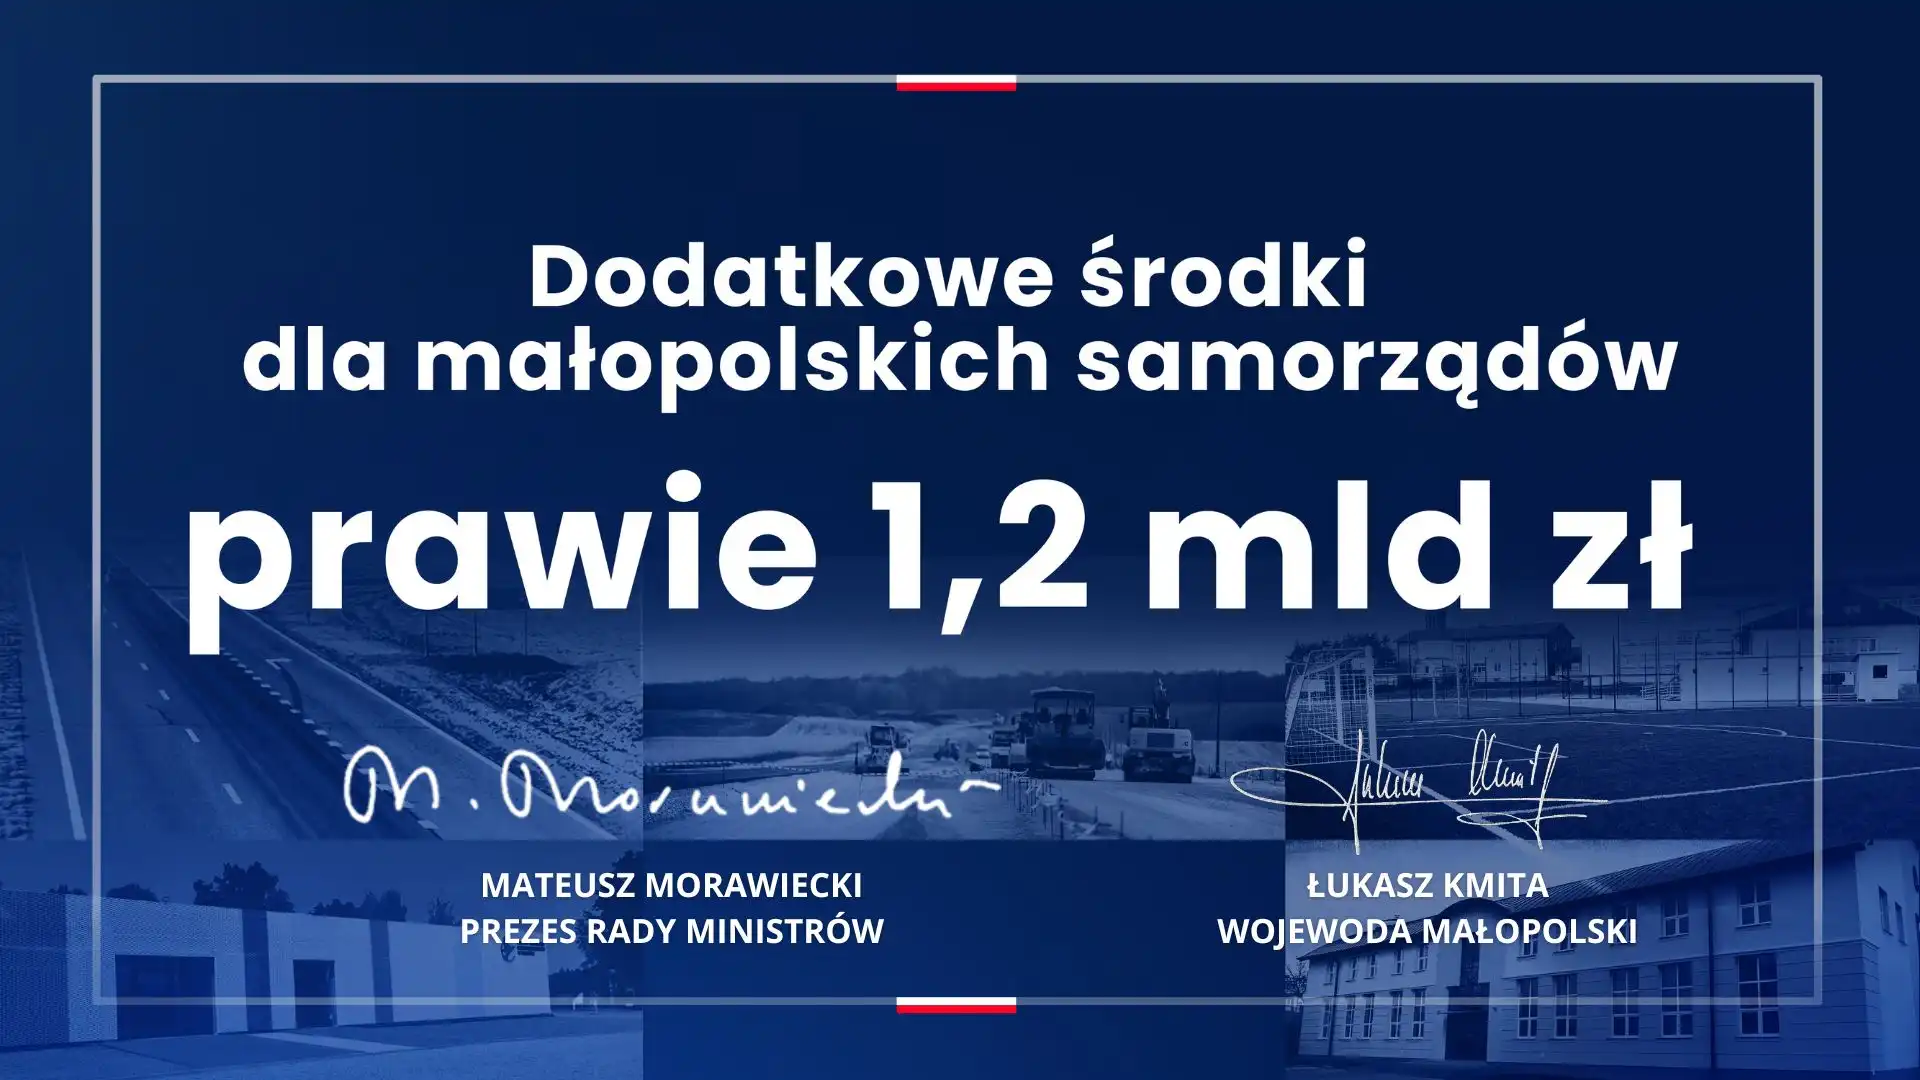 Małopolskie samorządy, w tym miasto Nowy Sącz i powiat nowosądecki otrzymają dodatkowe środki finansowe z budżetu państwa